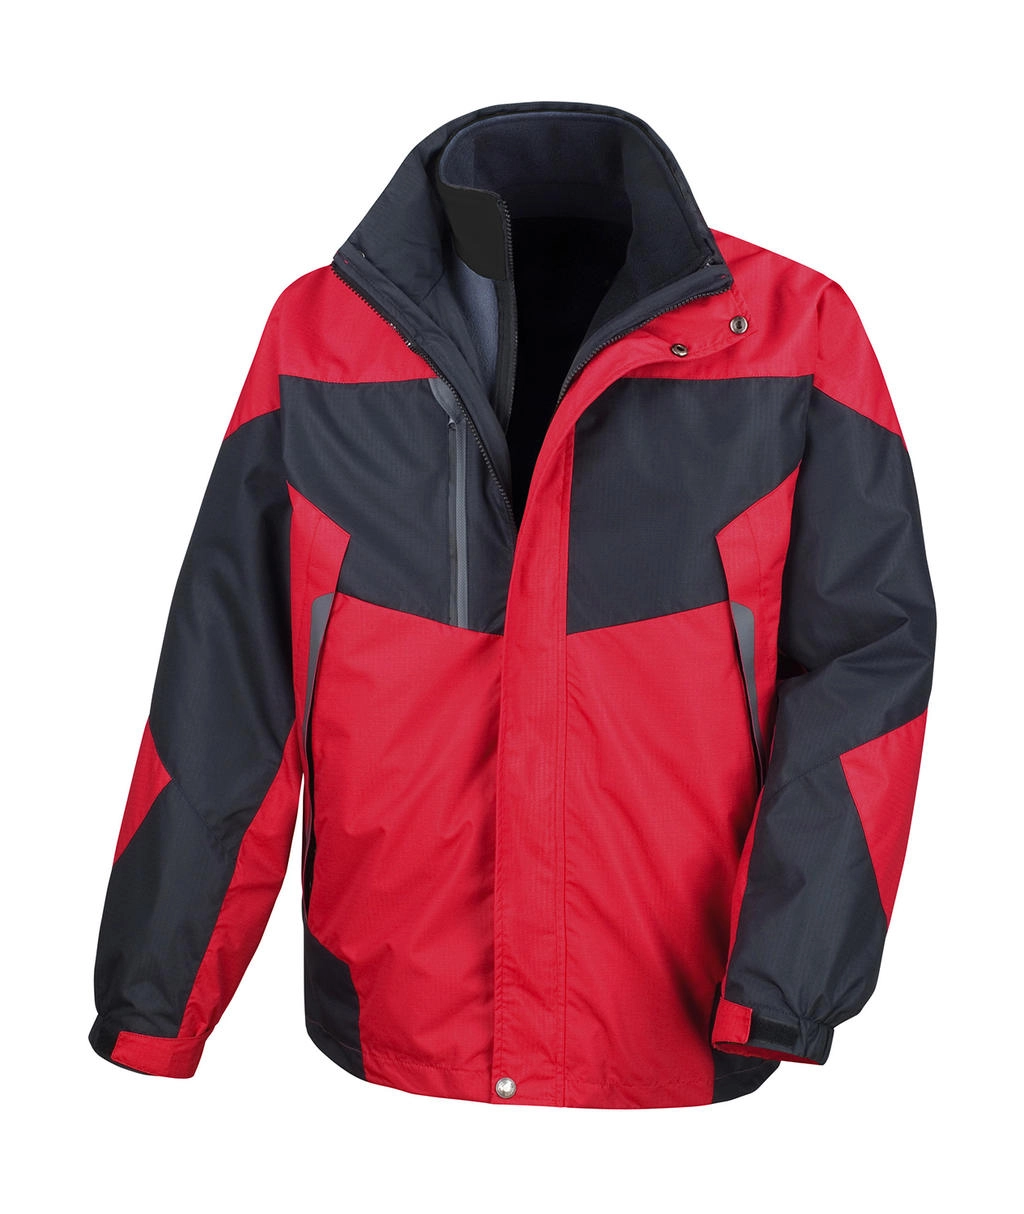 3-in-1 Aspen Jacket zum Besticken und Bedrucken in der Farbe Red/Black mit Ihren Logo, Schriftzug oder Motiv.